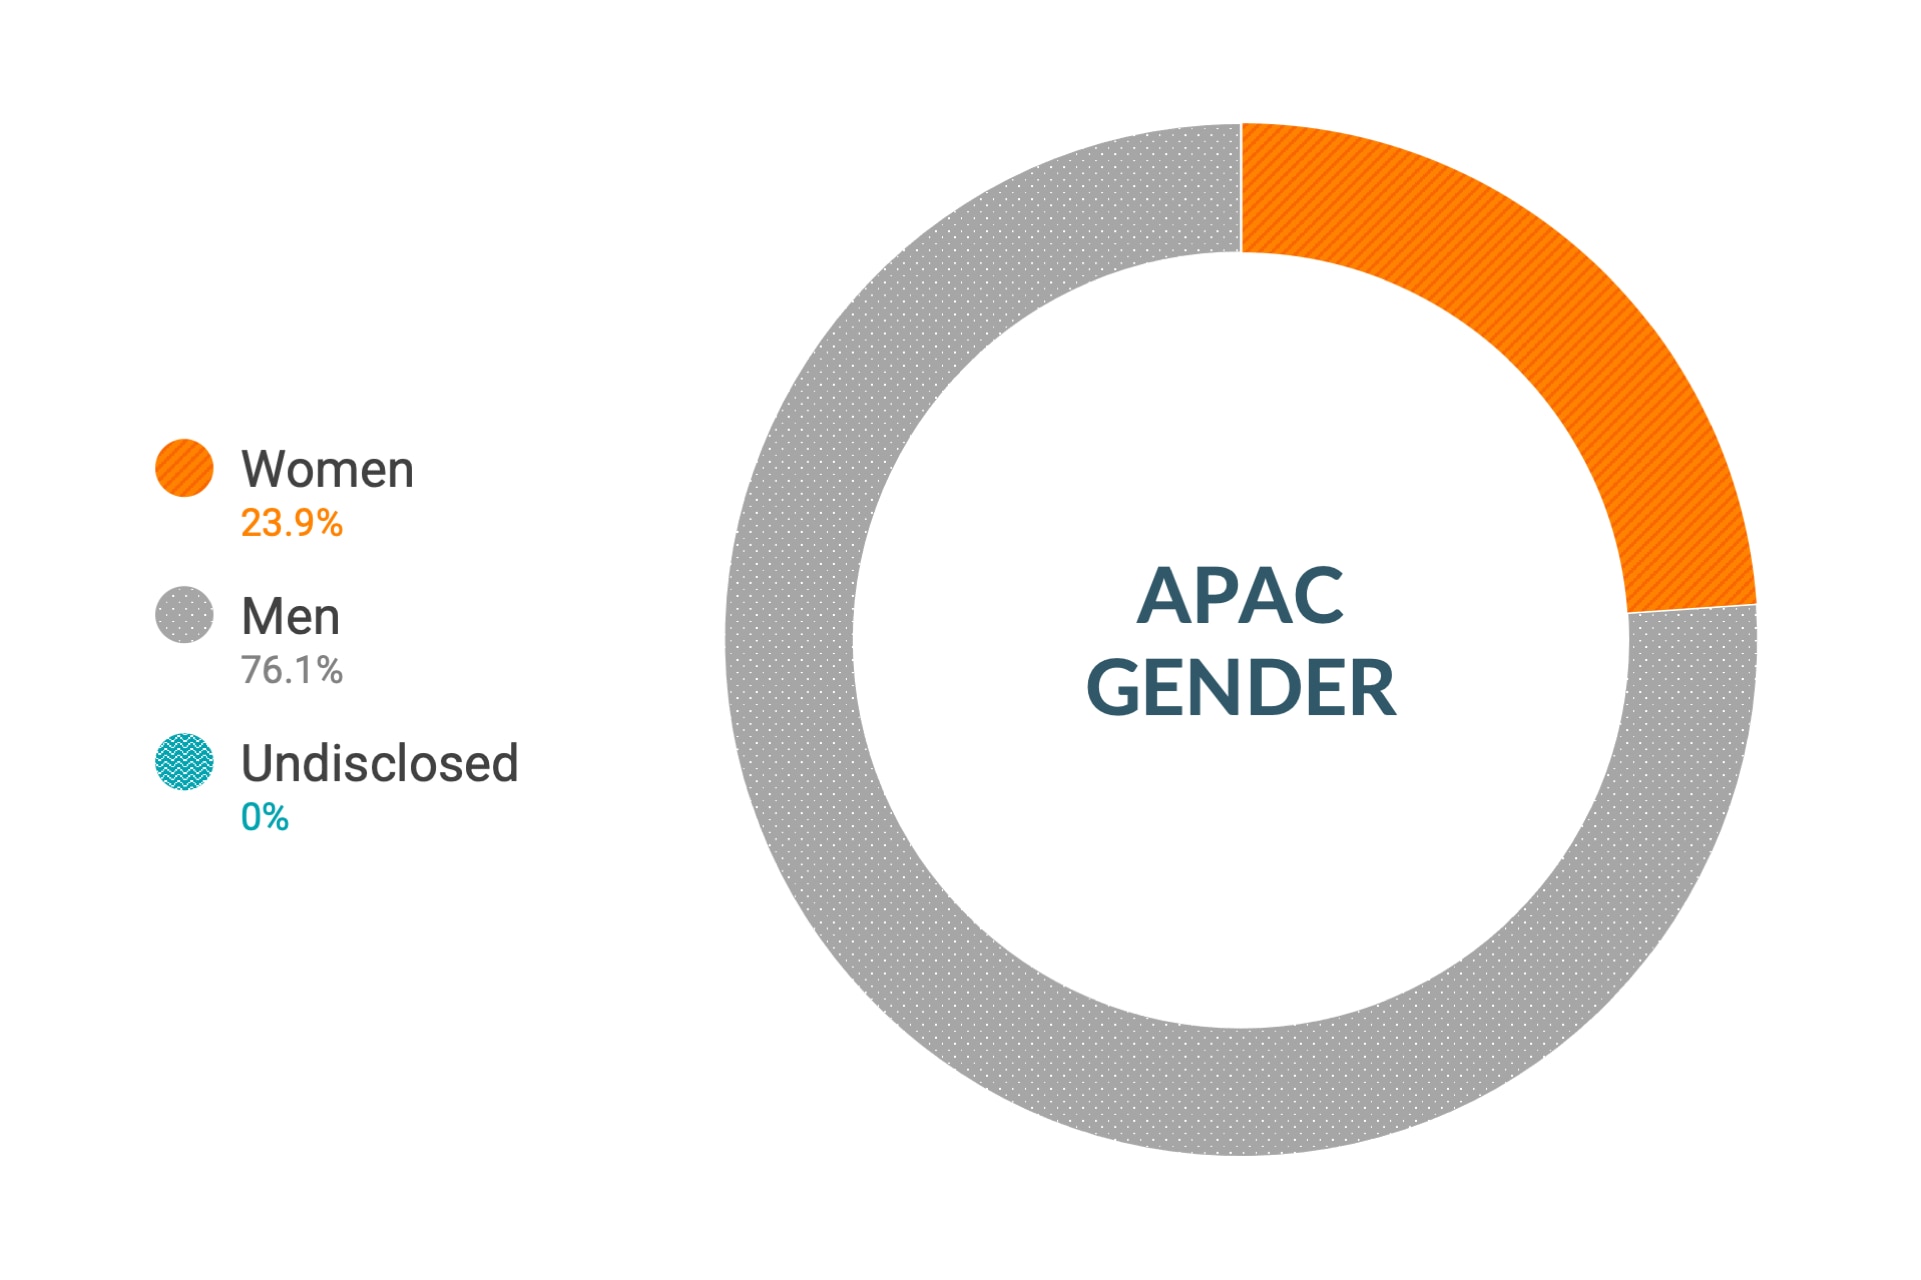 Dati Cloudera su diversità di genere e inclusione nell'area APAC: donne 23,9%, uomini 76,1%, non dichiarato 0,0%